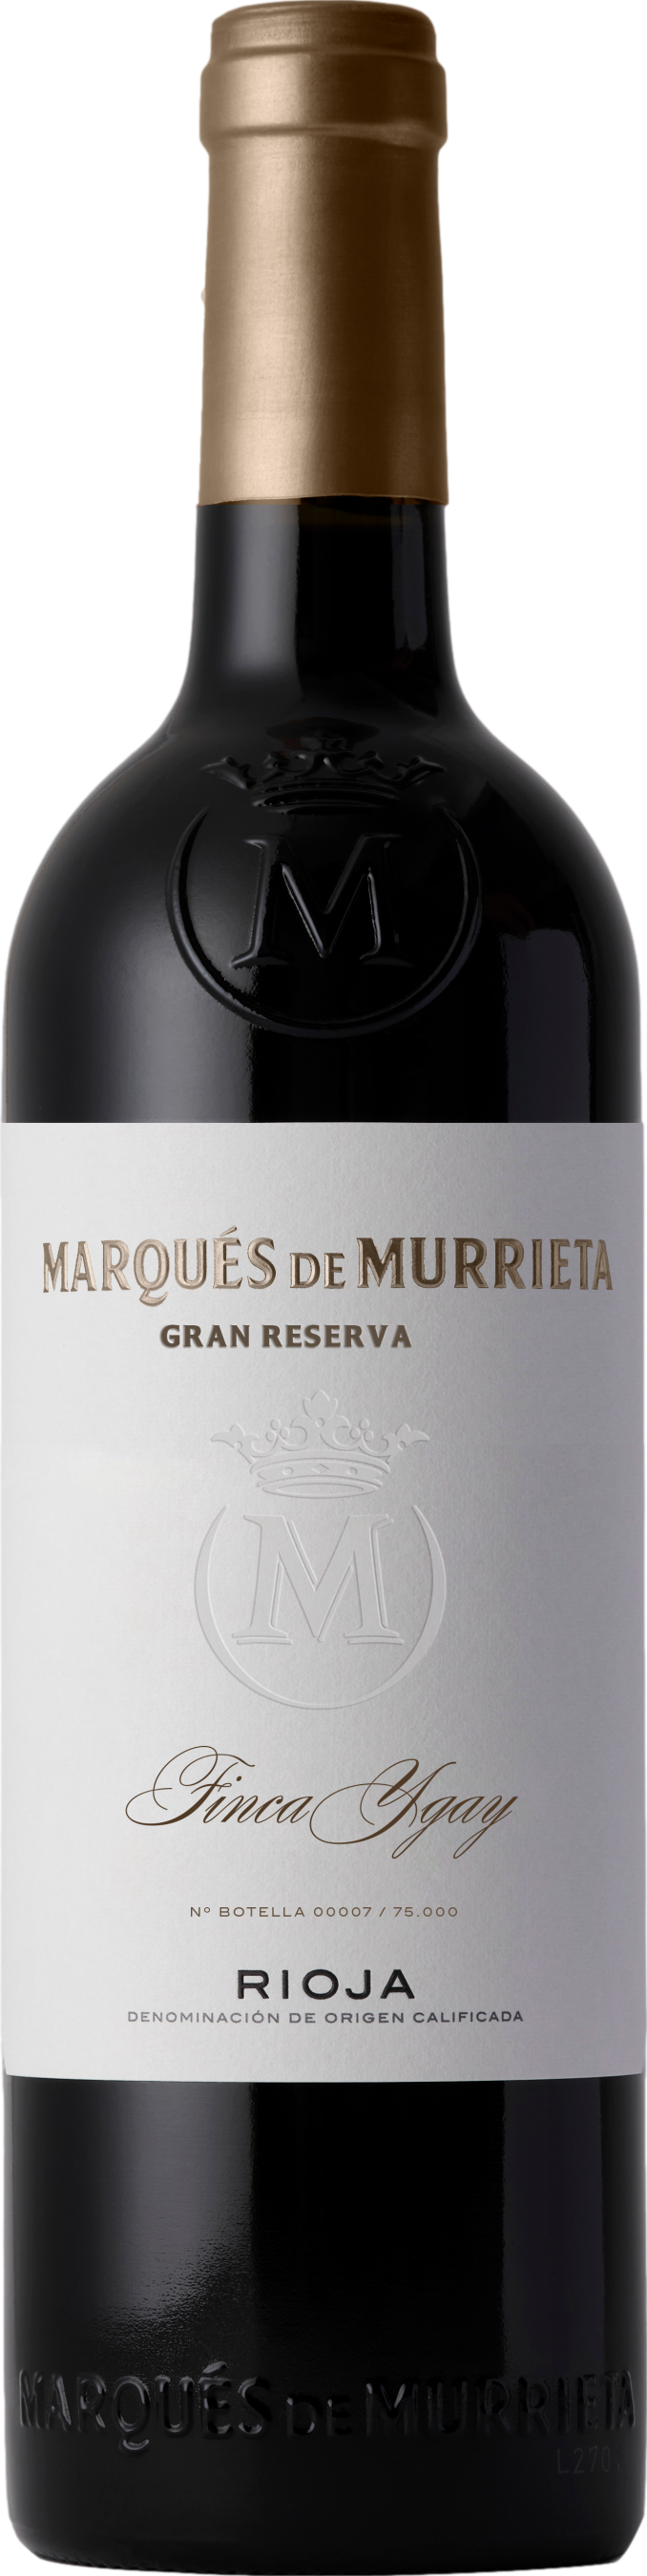 Marques de Murrieta Gran Reserva 2015